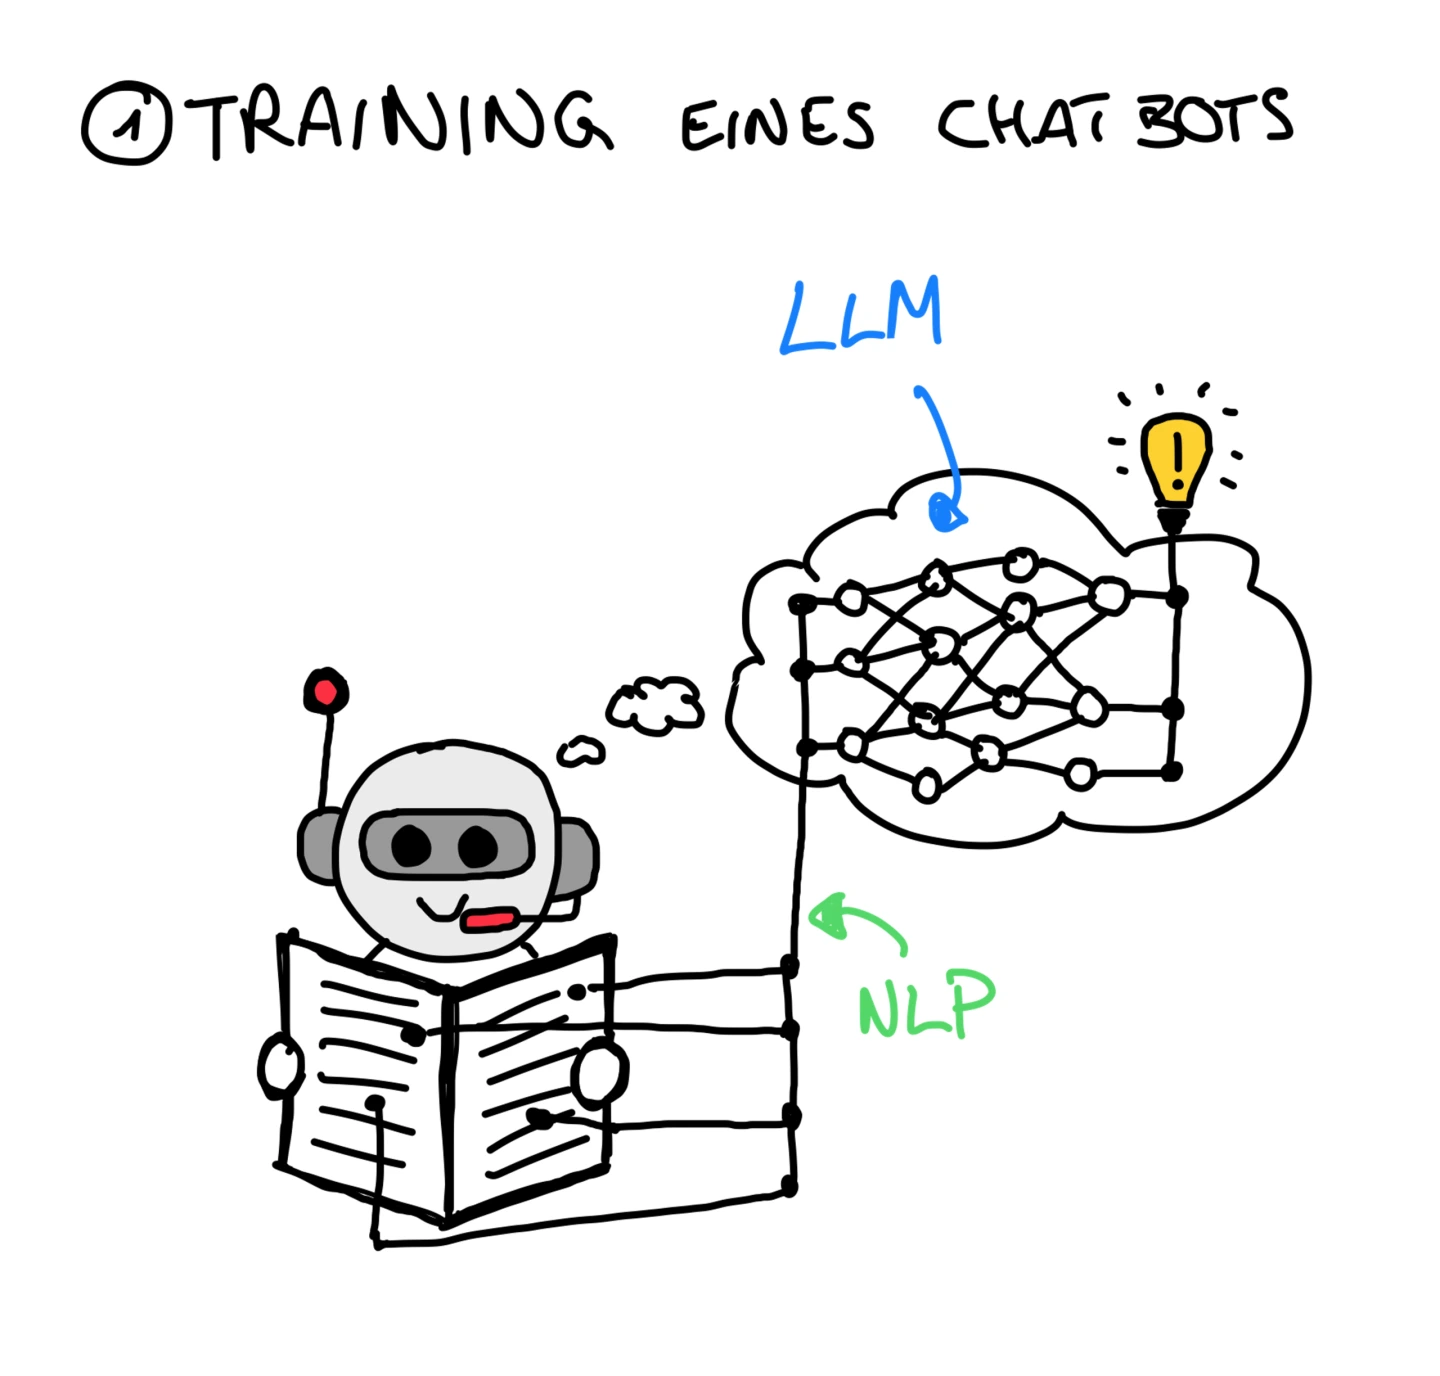 Beim Training eines Chatbots wird per NLP ein LLM aufgebaut.